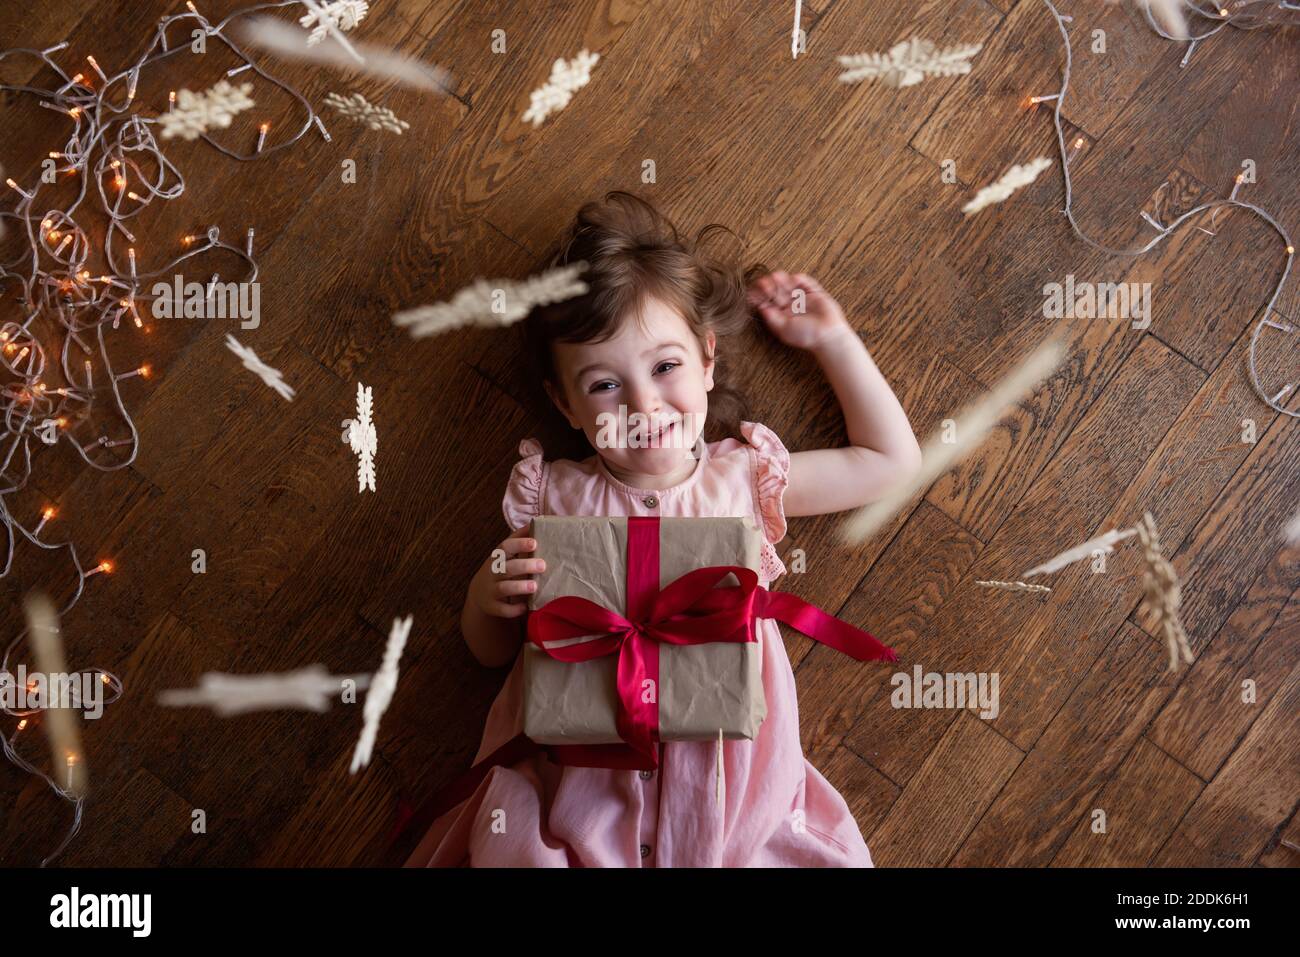 Kleines glückliches Mädchen in einem rosa Kleid liegt auf dem Holzboden. Hält eine Weihnachtsbox in Bastelverpackung, ein Weihnachtsgeschenk mit einem roten Band. Schneeflocken h Stockfoto